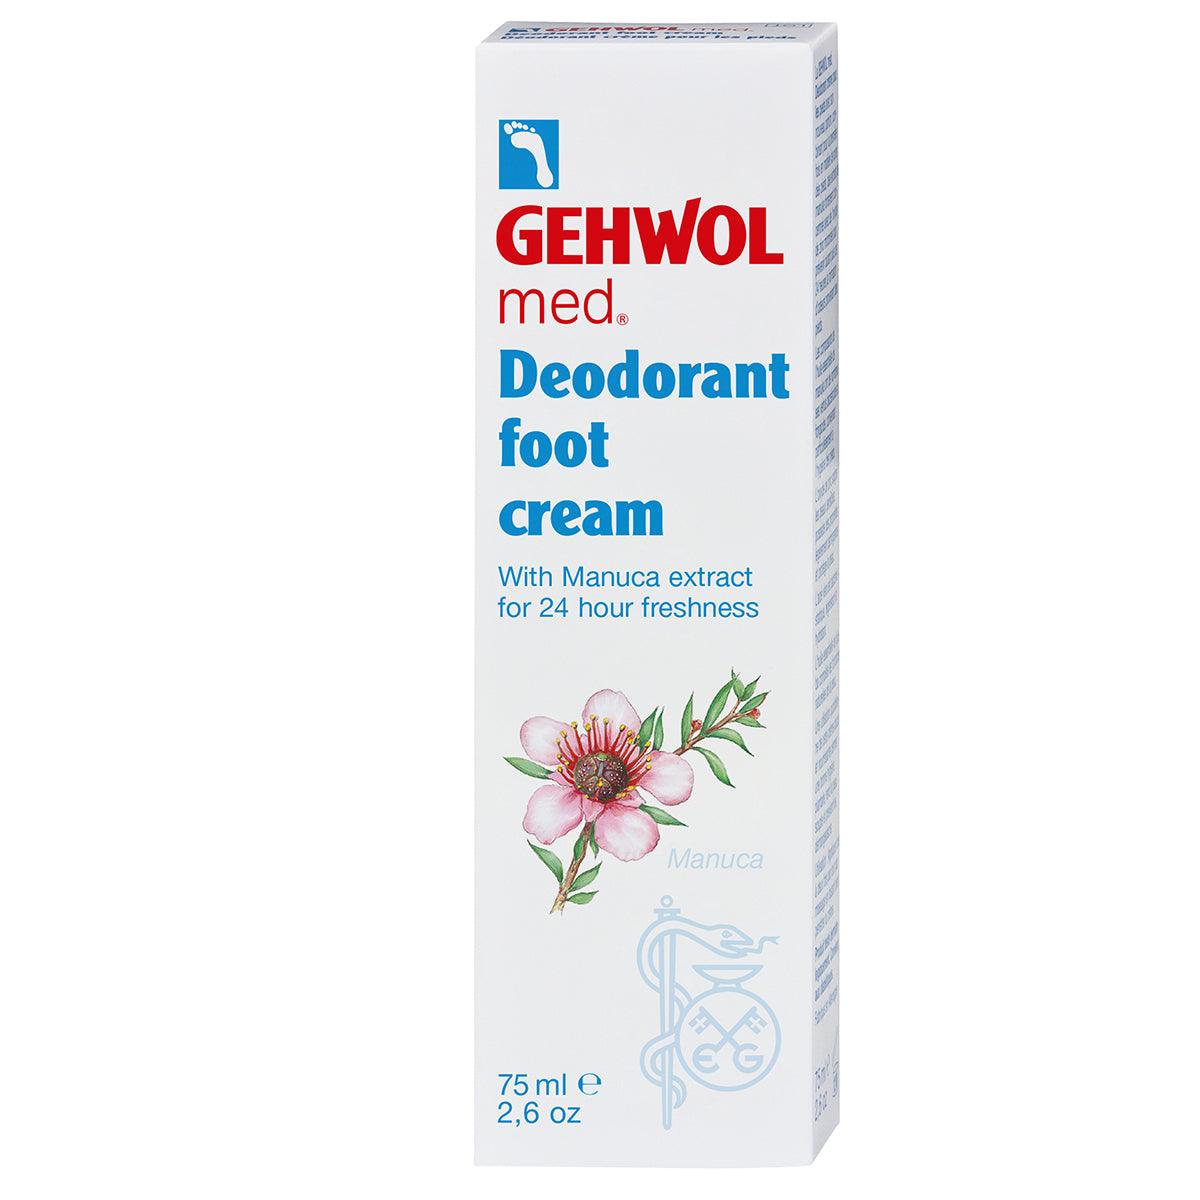 Gehwol med. Deodorant Foot Cream | Fotpleie | Gehwol | JK SHOP | JK Barber og herre frisør | Lavepriser | Best